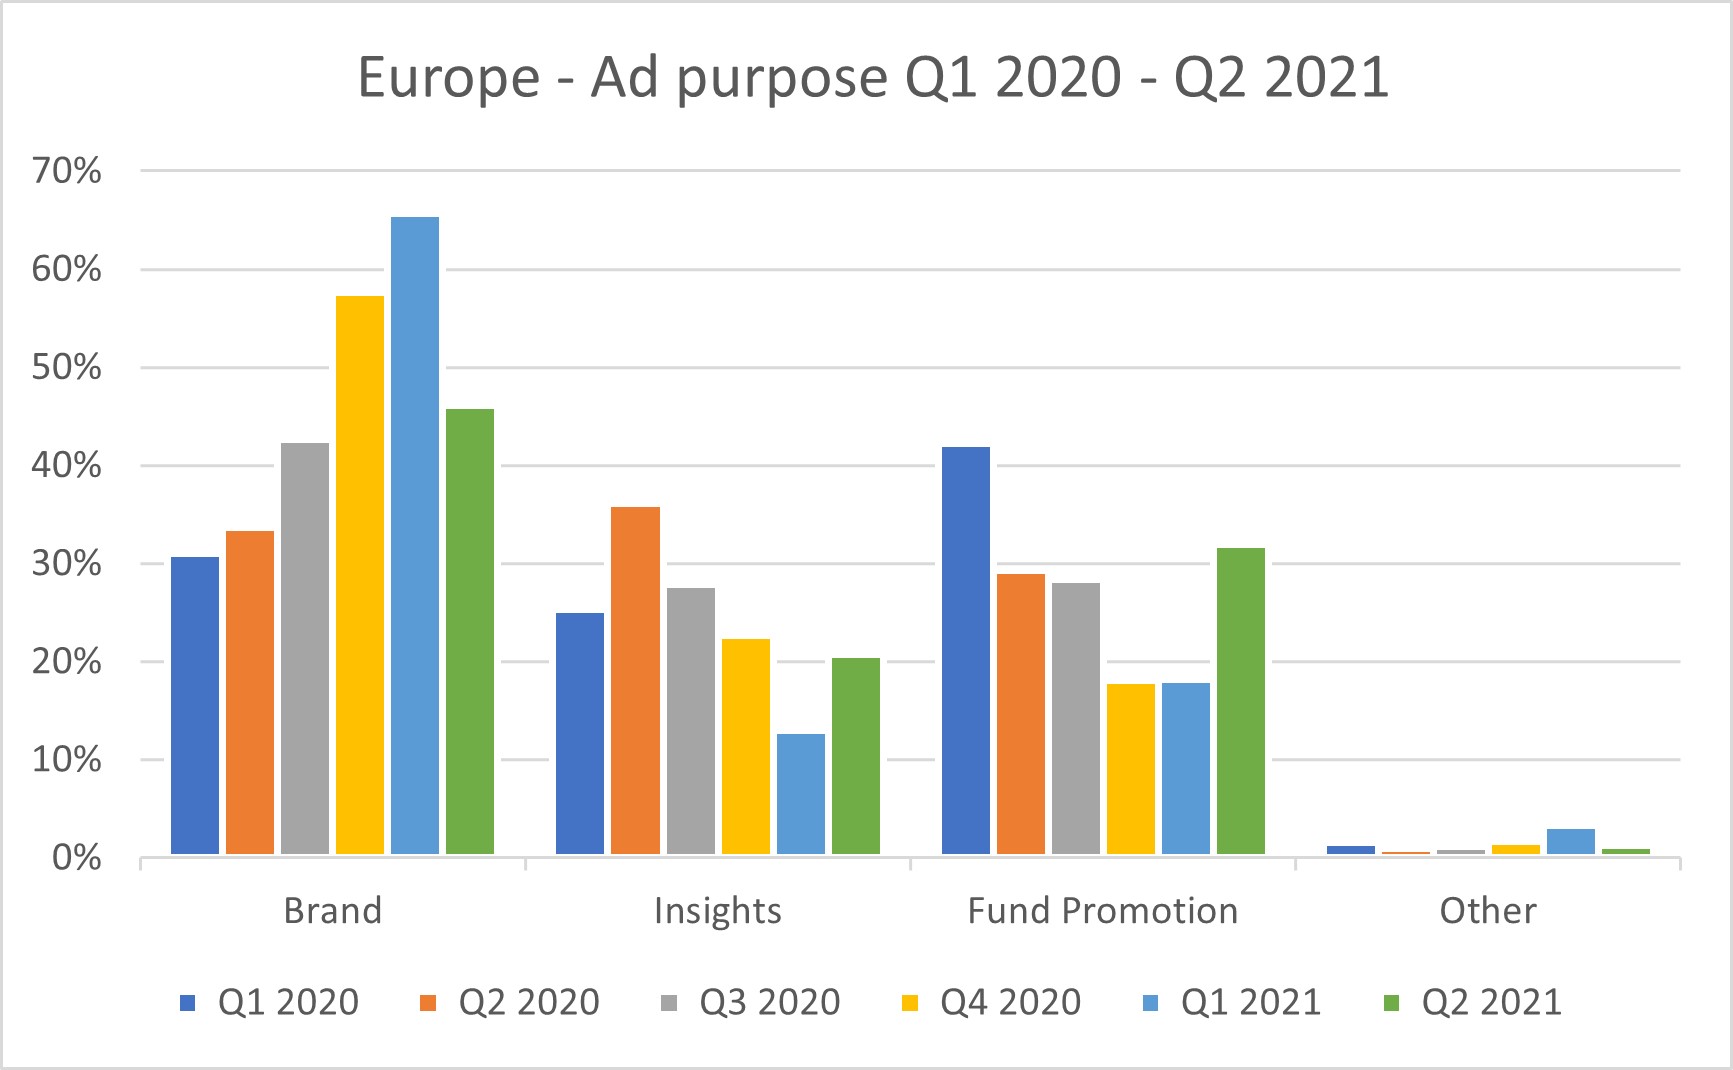 Europe ad purpose Q2 2021